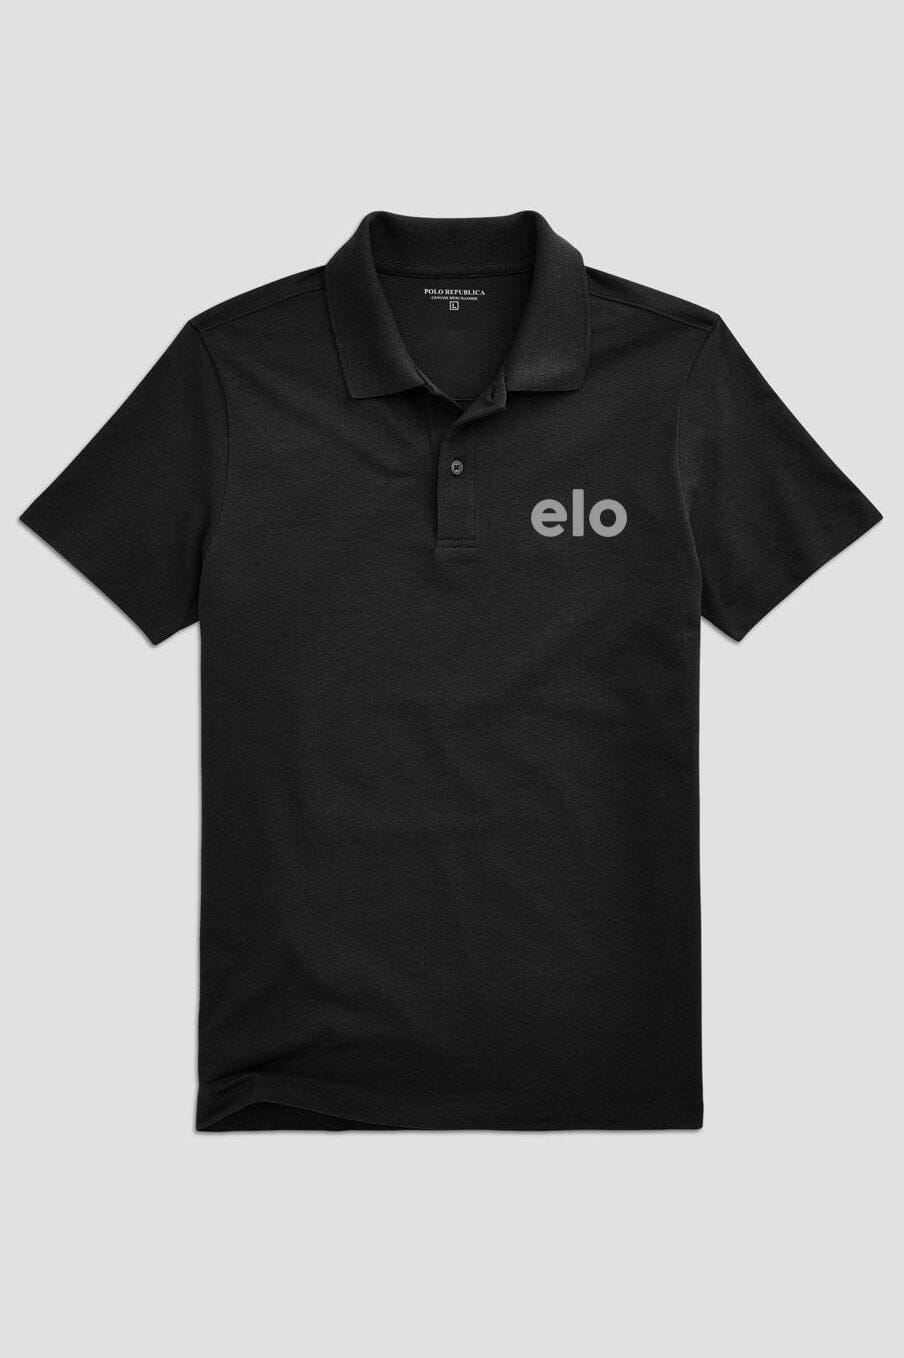 Polo Republica Men's ELO Reflectors Activewear Polo Shirt Men's Polo Shirt Polo Republica 